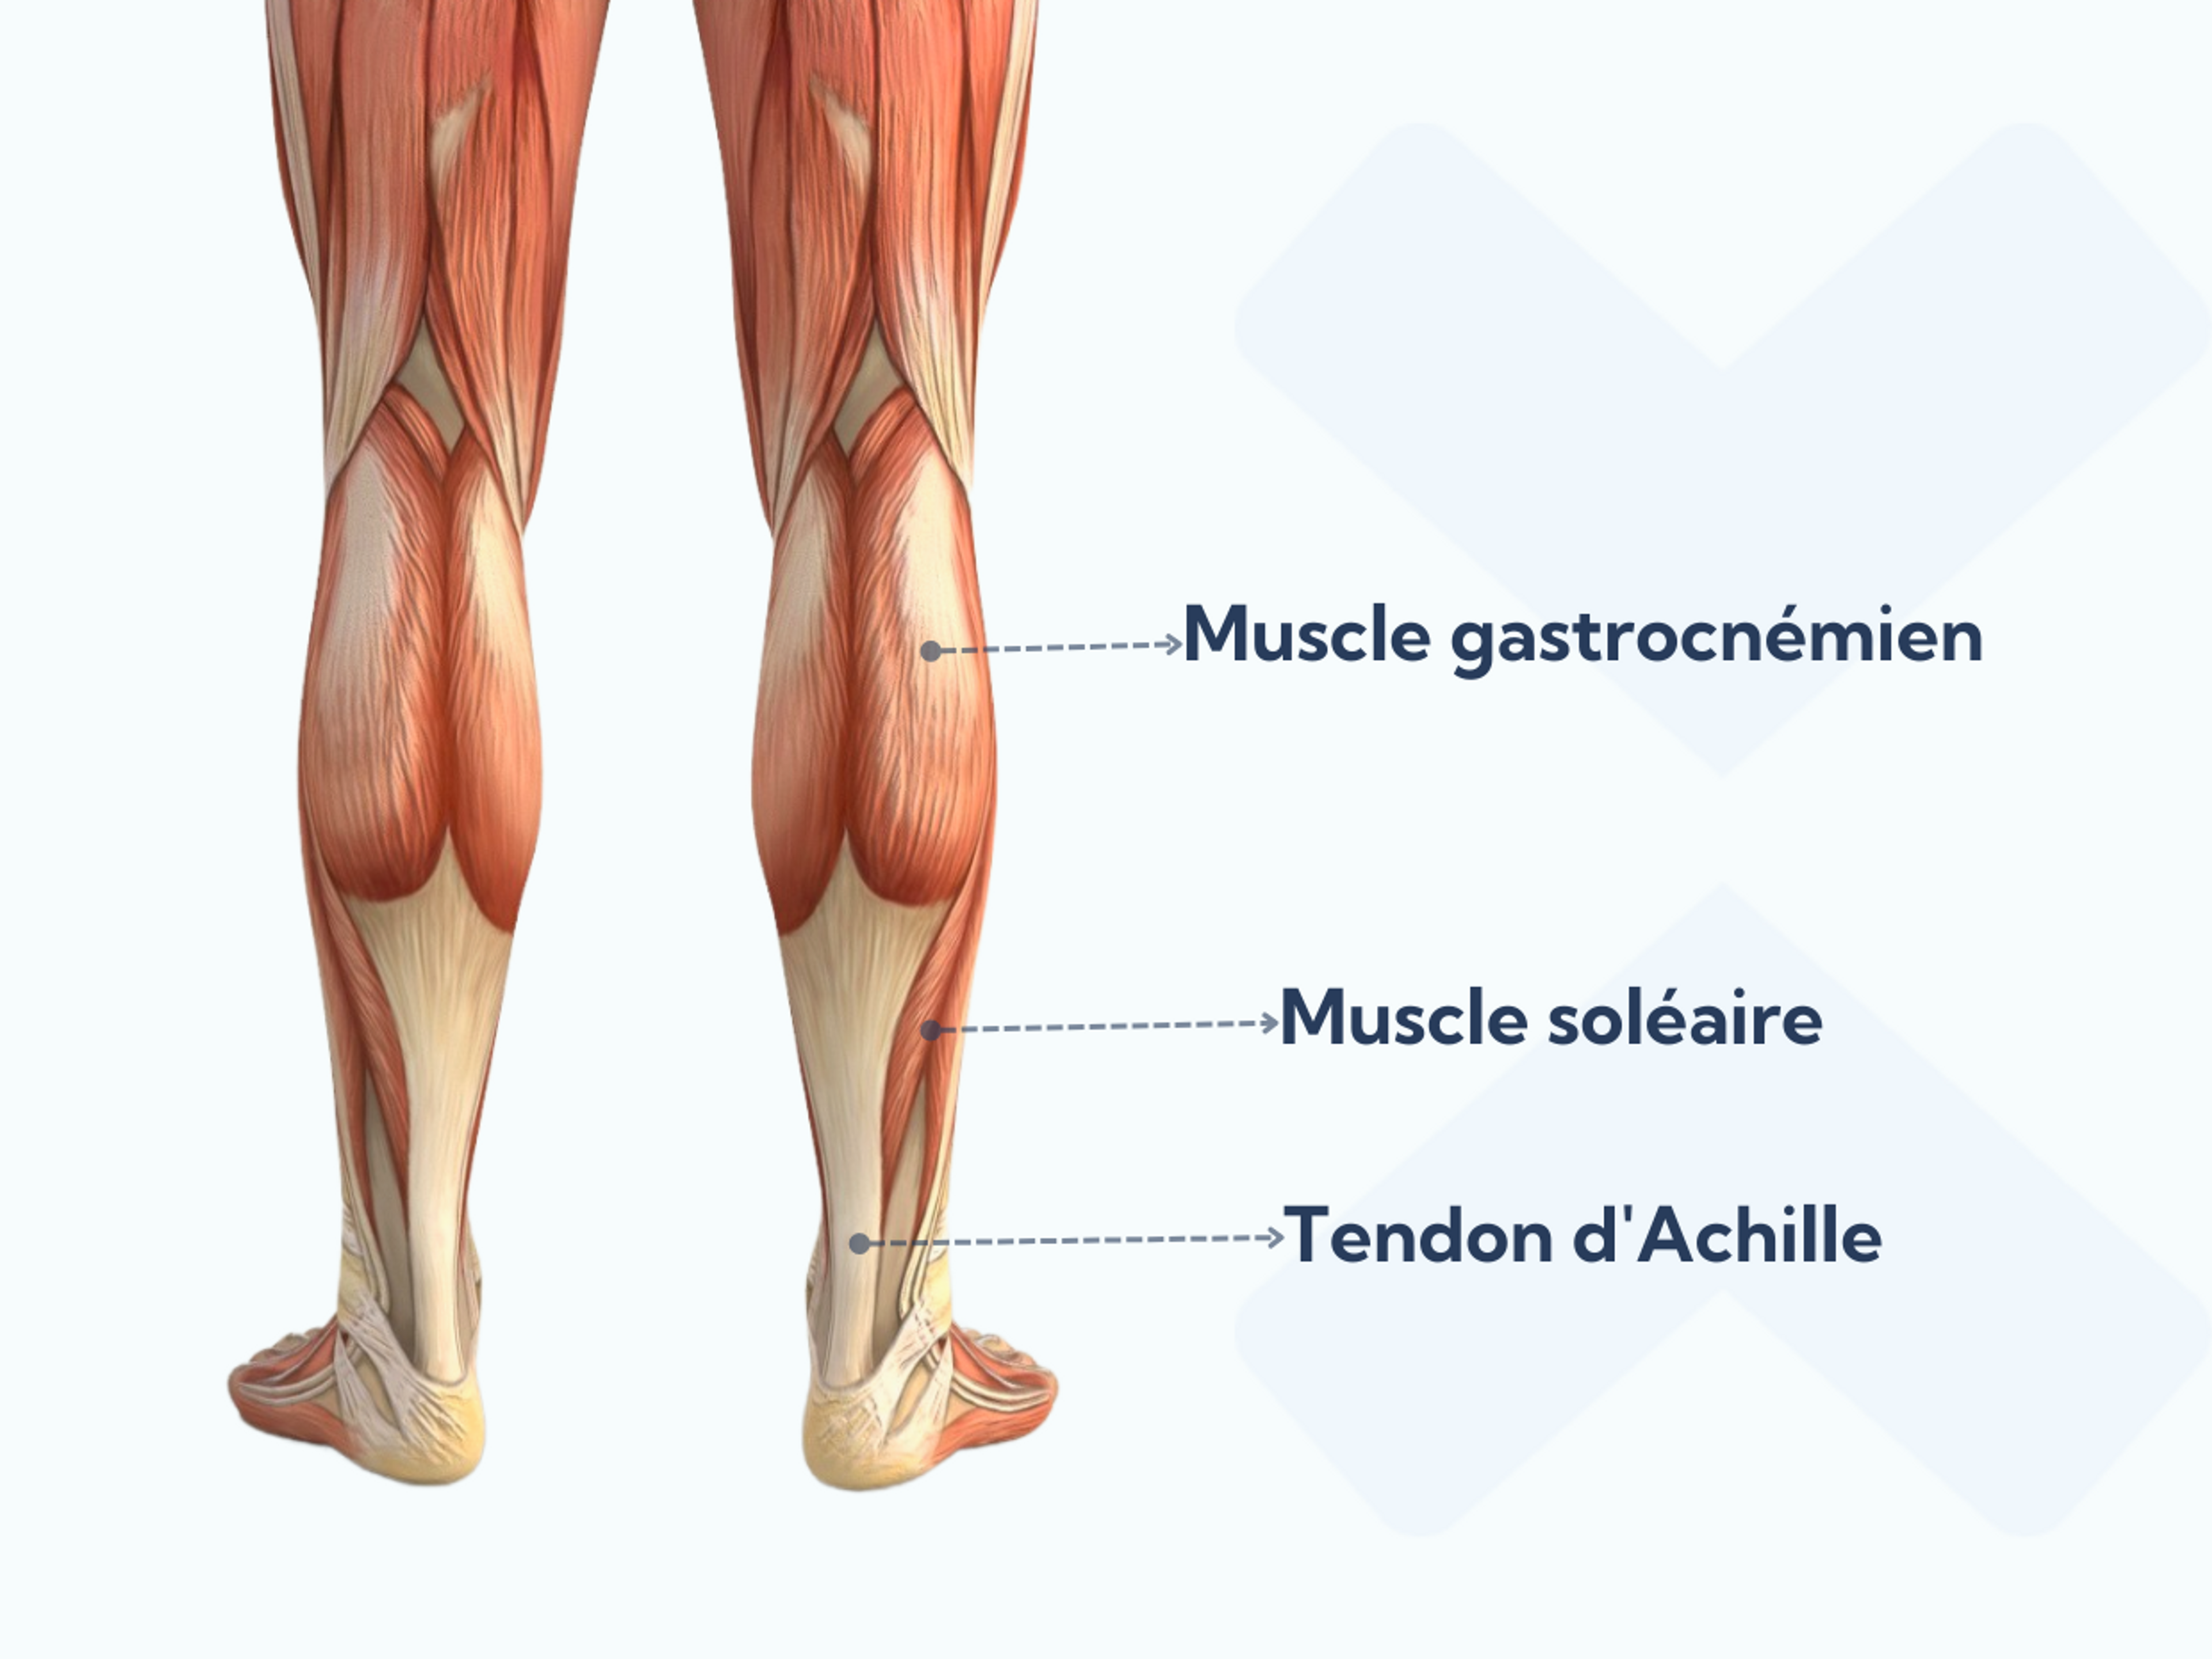 Les muscles gastrocnémiens et soléaires constituent les muscles du mollet.